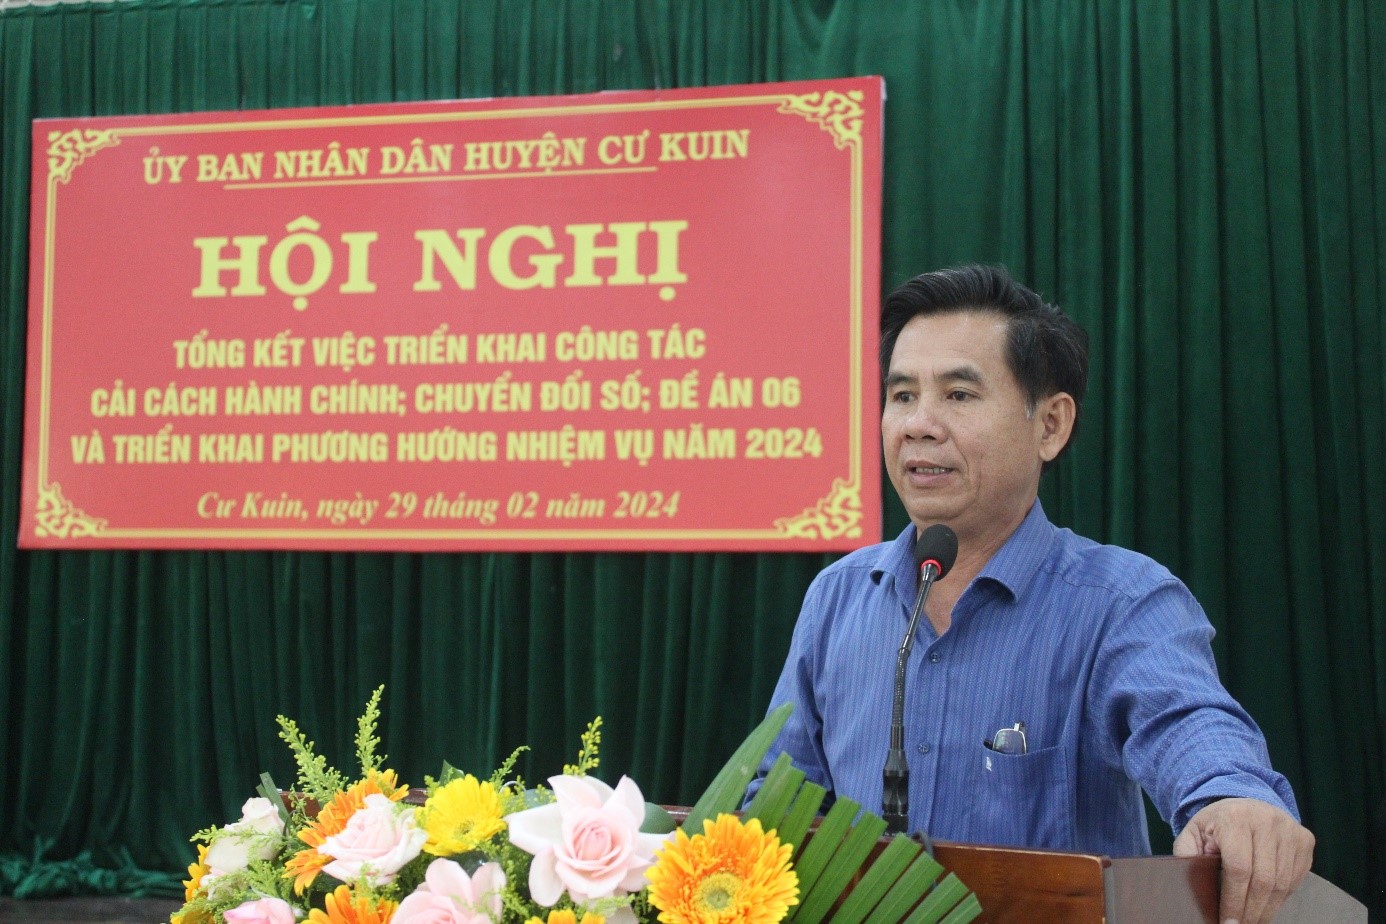 UBND huyện Cư Kuin triển khai công tác cải cách hành chính và chuyển đổi số năm 2024.